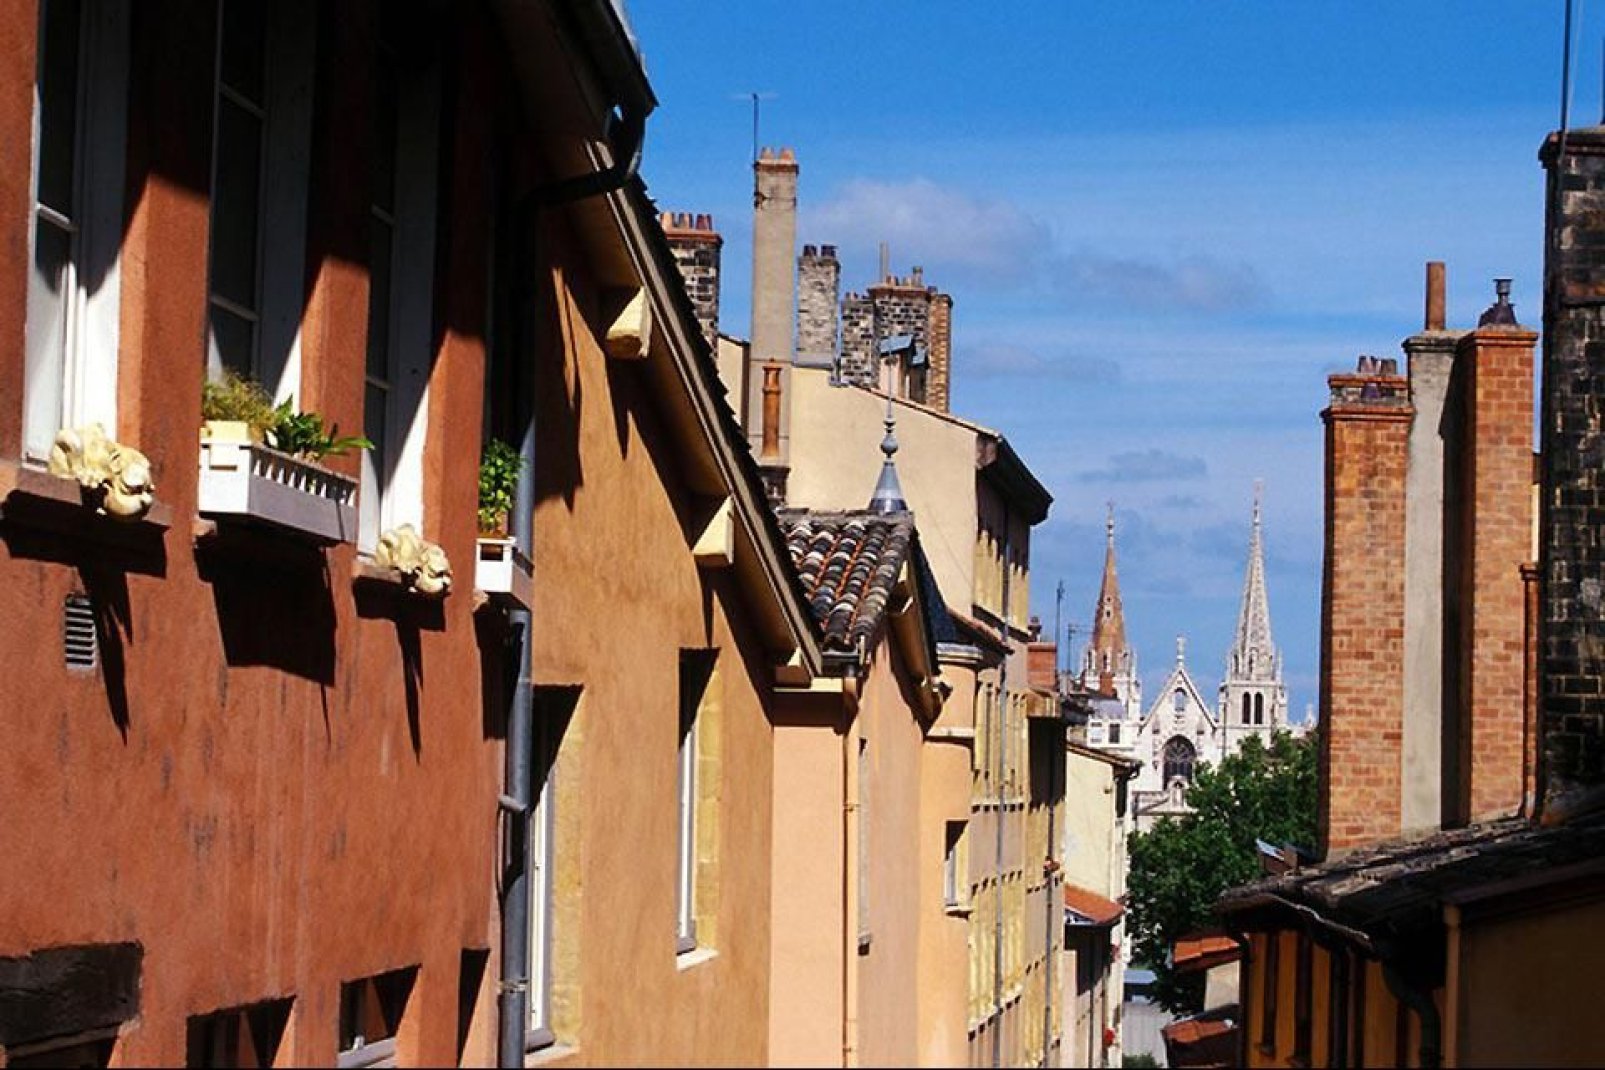 Diese kleinen, versteckten Passagen ermöglichen es, in Lyon über Höfe und Treppen von einer Straße zu anderen zu gelangen. In der Altstadt gibt es viele solcher Passagen, von denen allerdings sehr viele nicht für den Touristen geöffnet sind